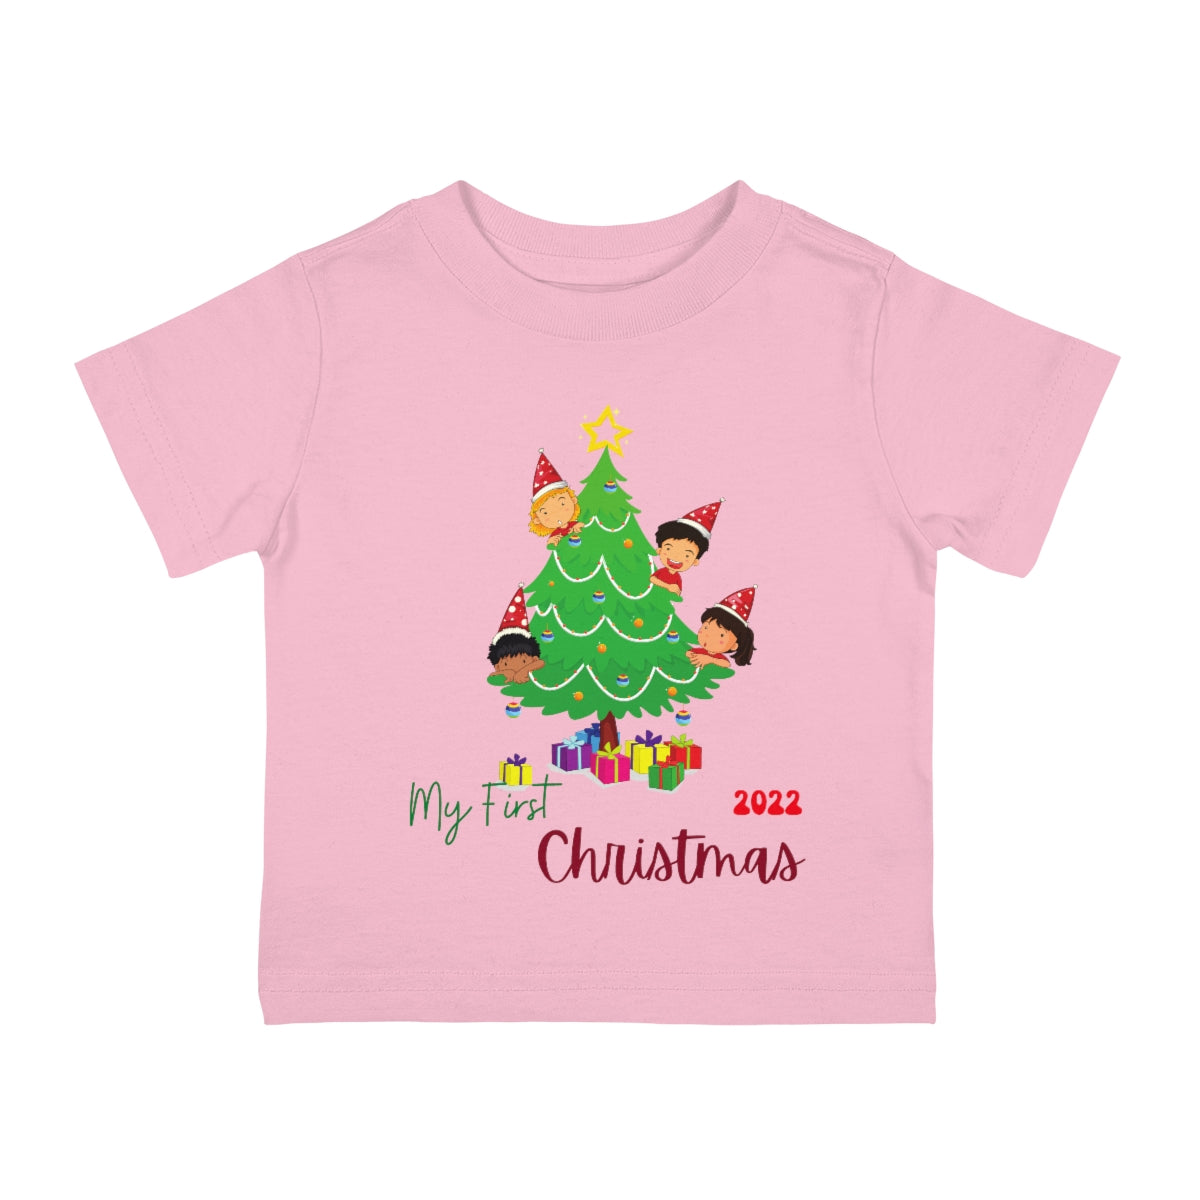 My first Christmas Christmas Tree Tee, Baby Tee, Infant Tee, Christmas Baby Tee